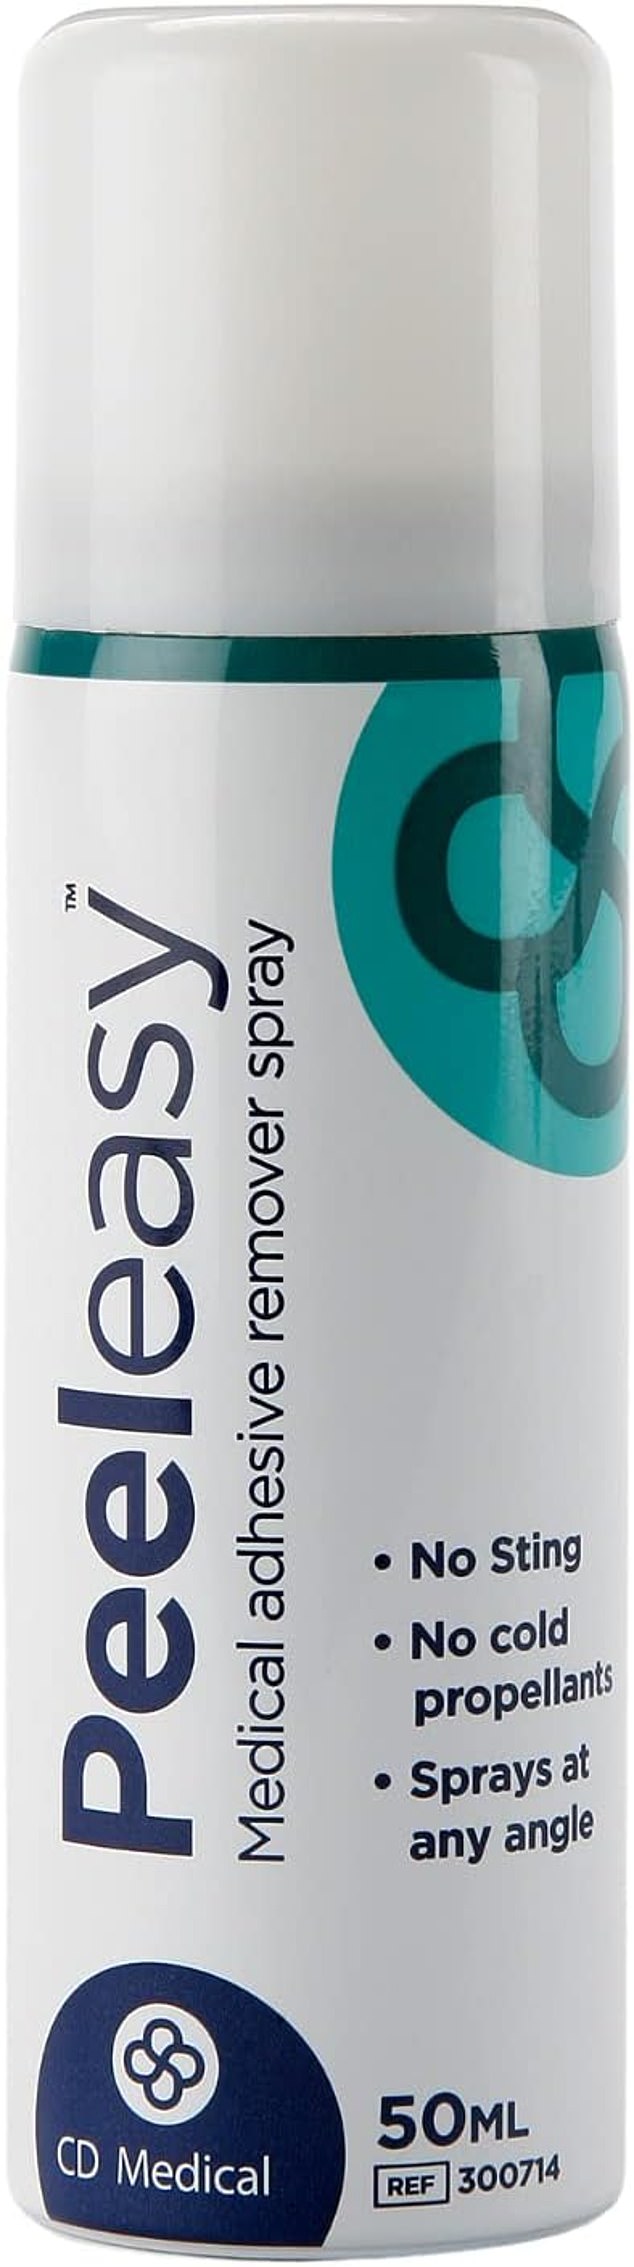 Das medizinische Klebstoffentfernungsspray Peel Easy (£14,97, amazon.co.uk) ist ein Muss, um durch HRT-Pflaster verursachte klebrige Stellen schmerzlos zu entfernen